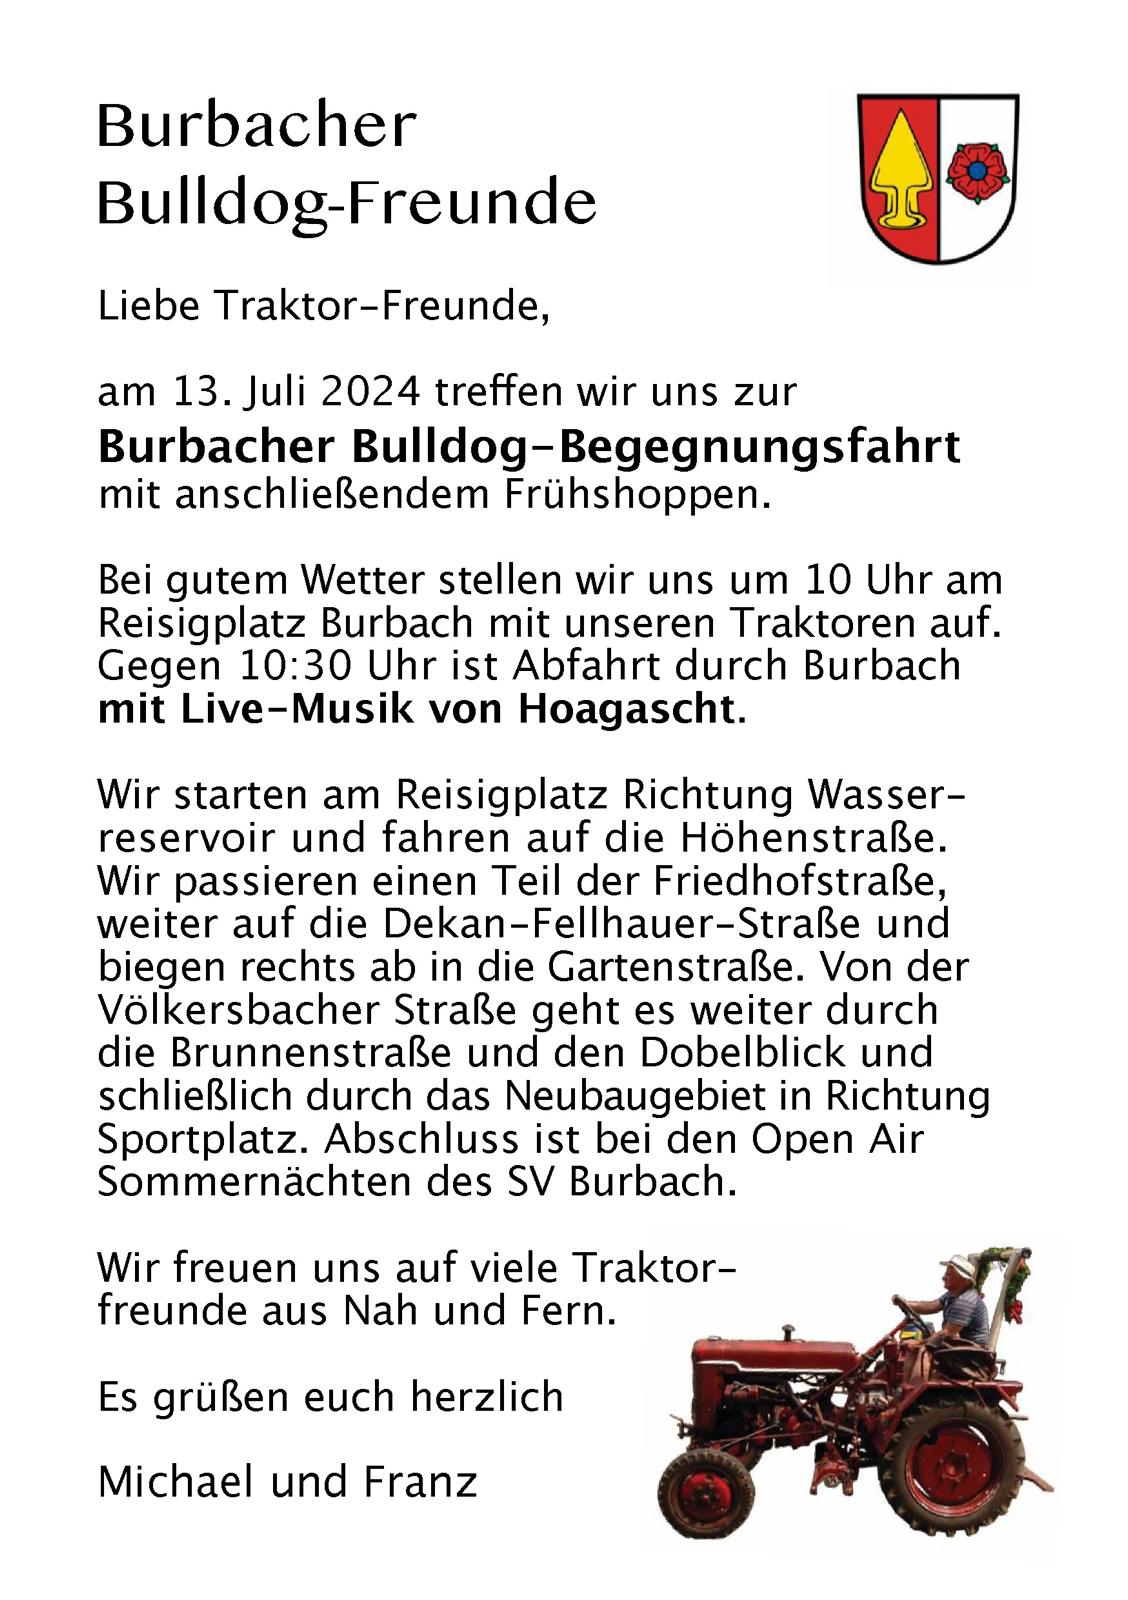 Burbacher Bulldog-Begegnungsfahrt am 13. Juli 2024